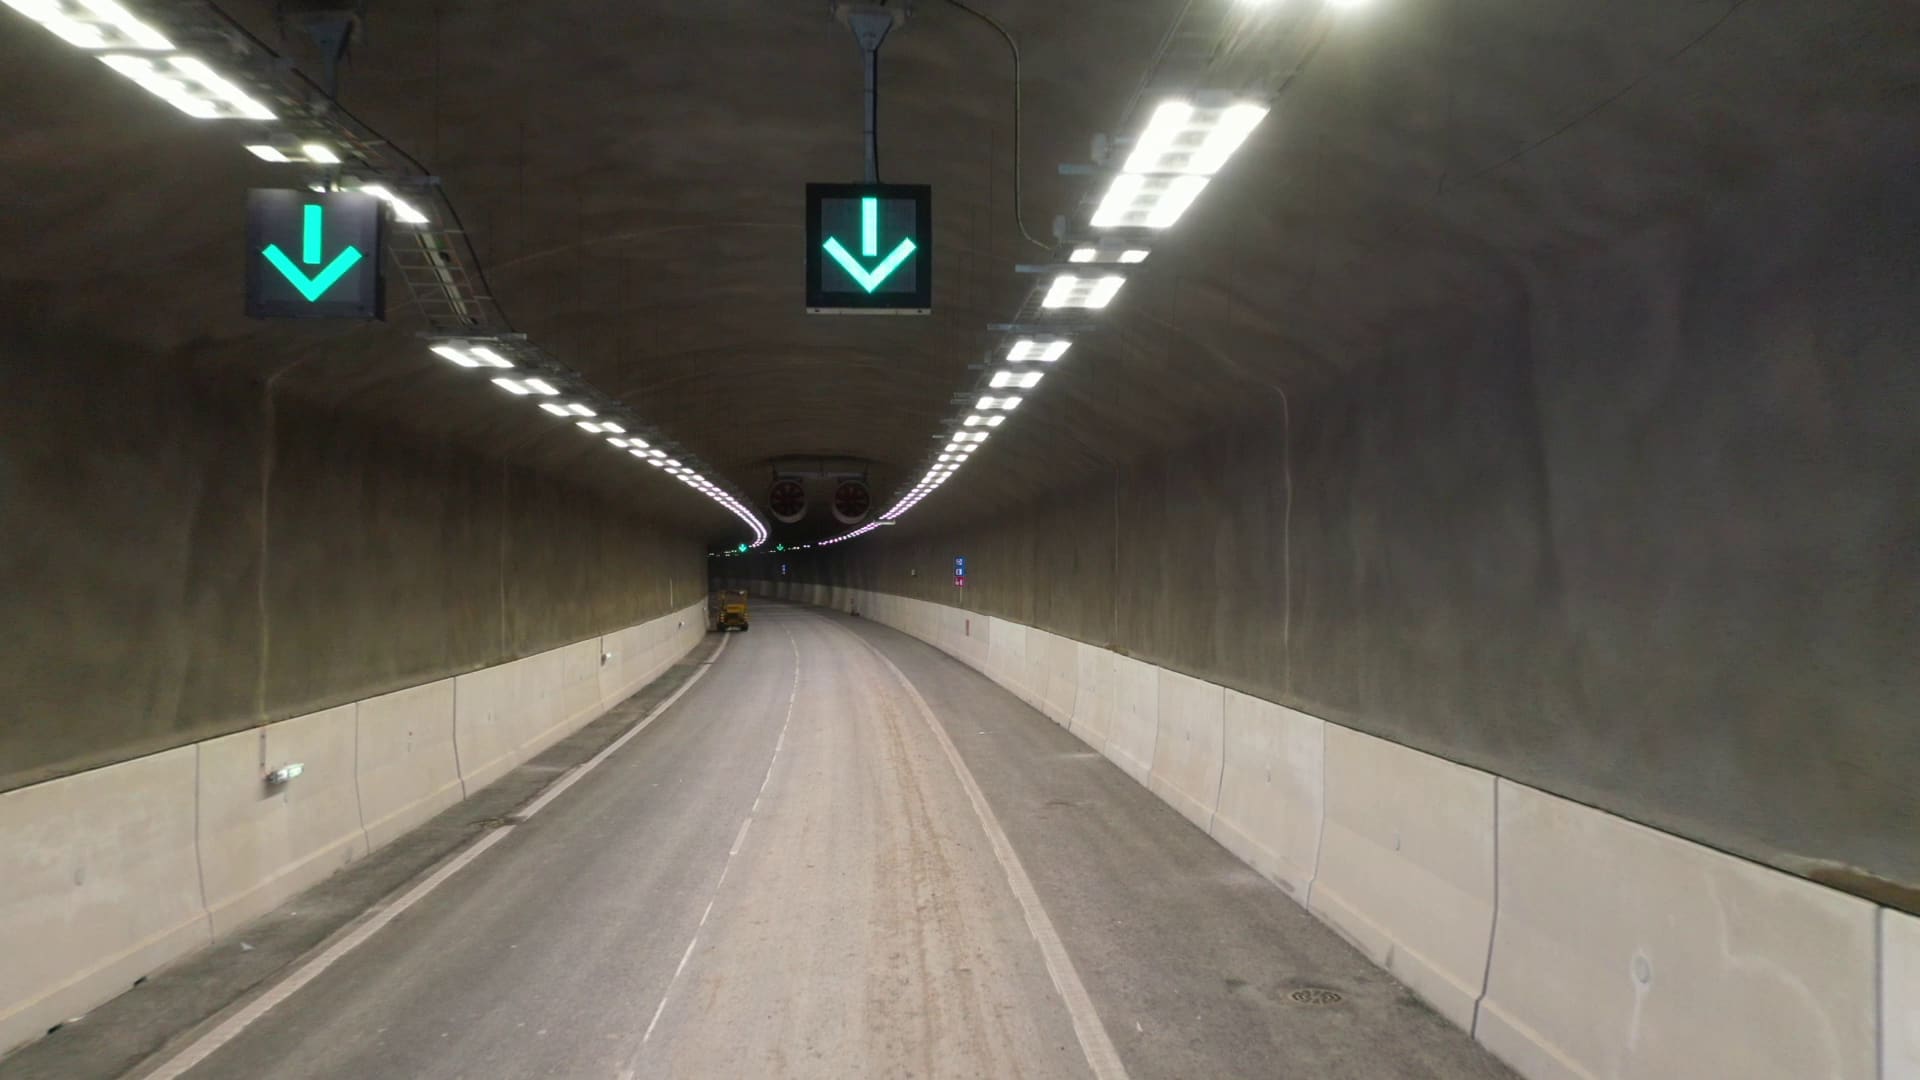 Liipolan tunneli valmistuu, ja se sisältää uusinta turvallisuustekniikka, jonka avulla tilannetta valvotaan Tampereella